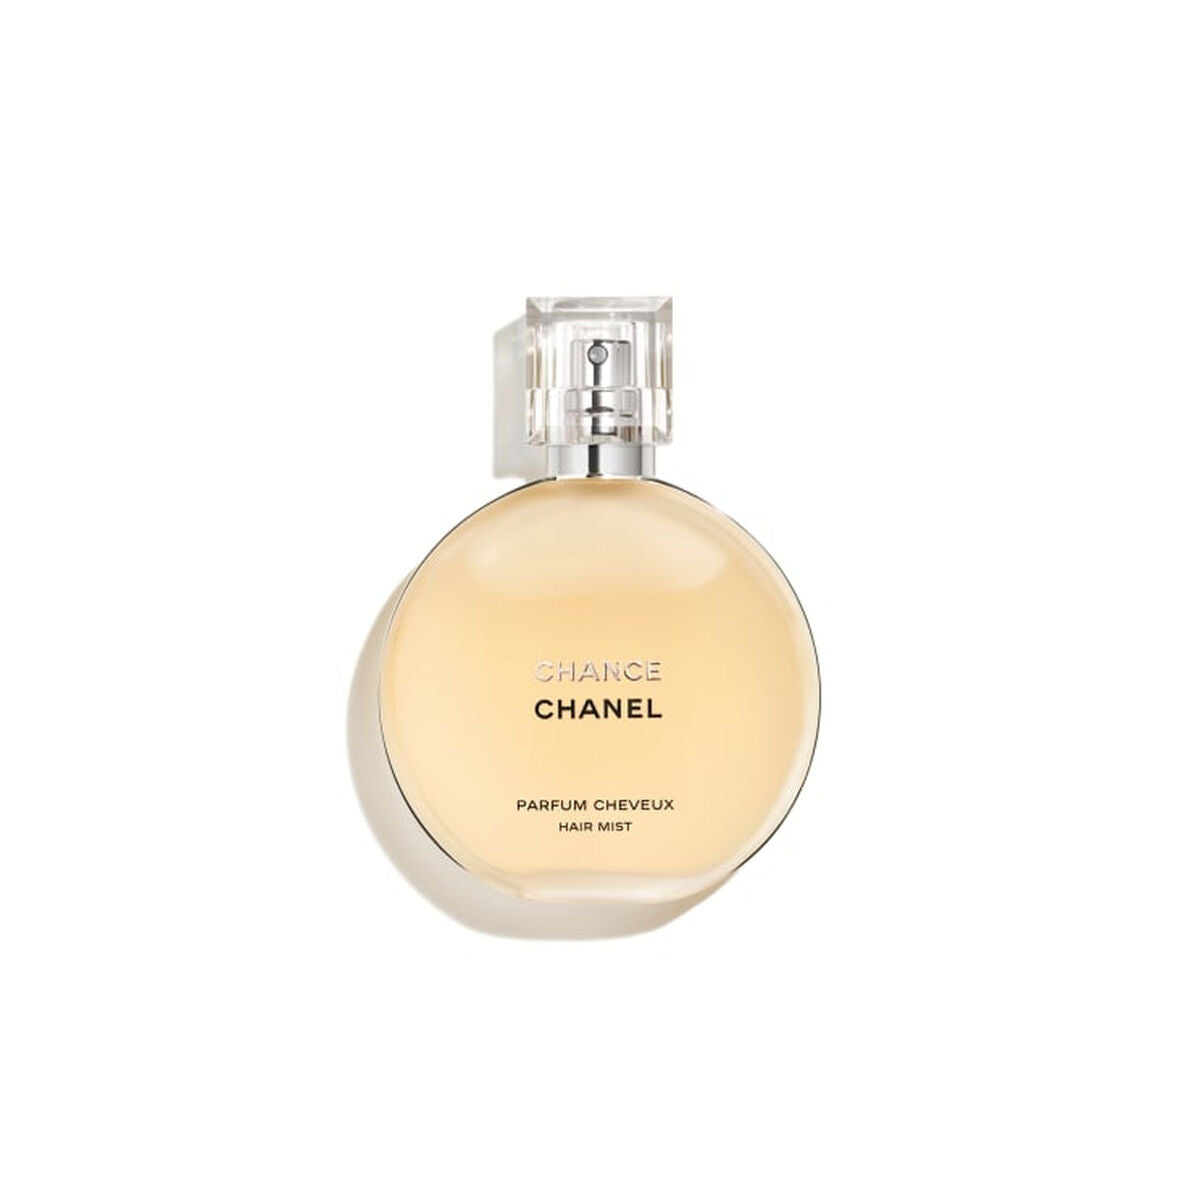 Kaufe Chanel Chance 35 ml EDP - Damen bei AWK Flagship um € 91.00